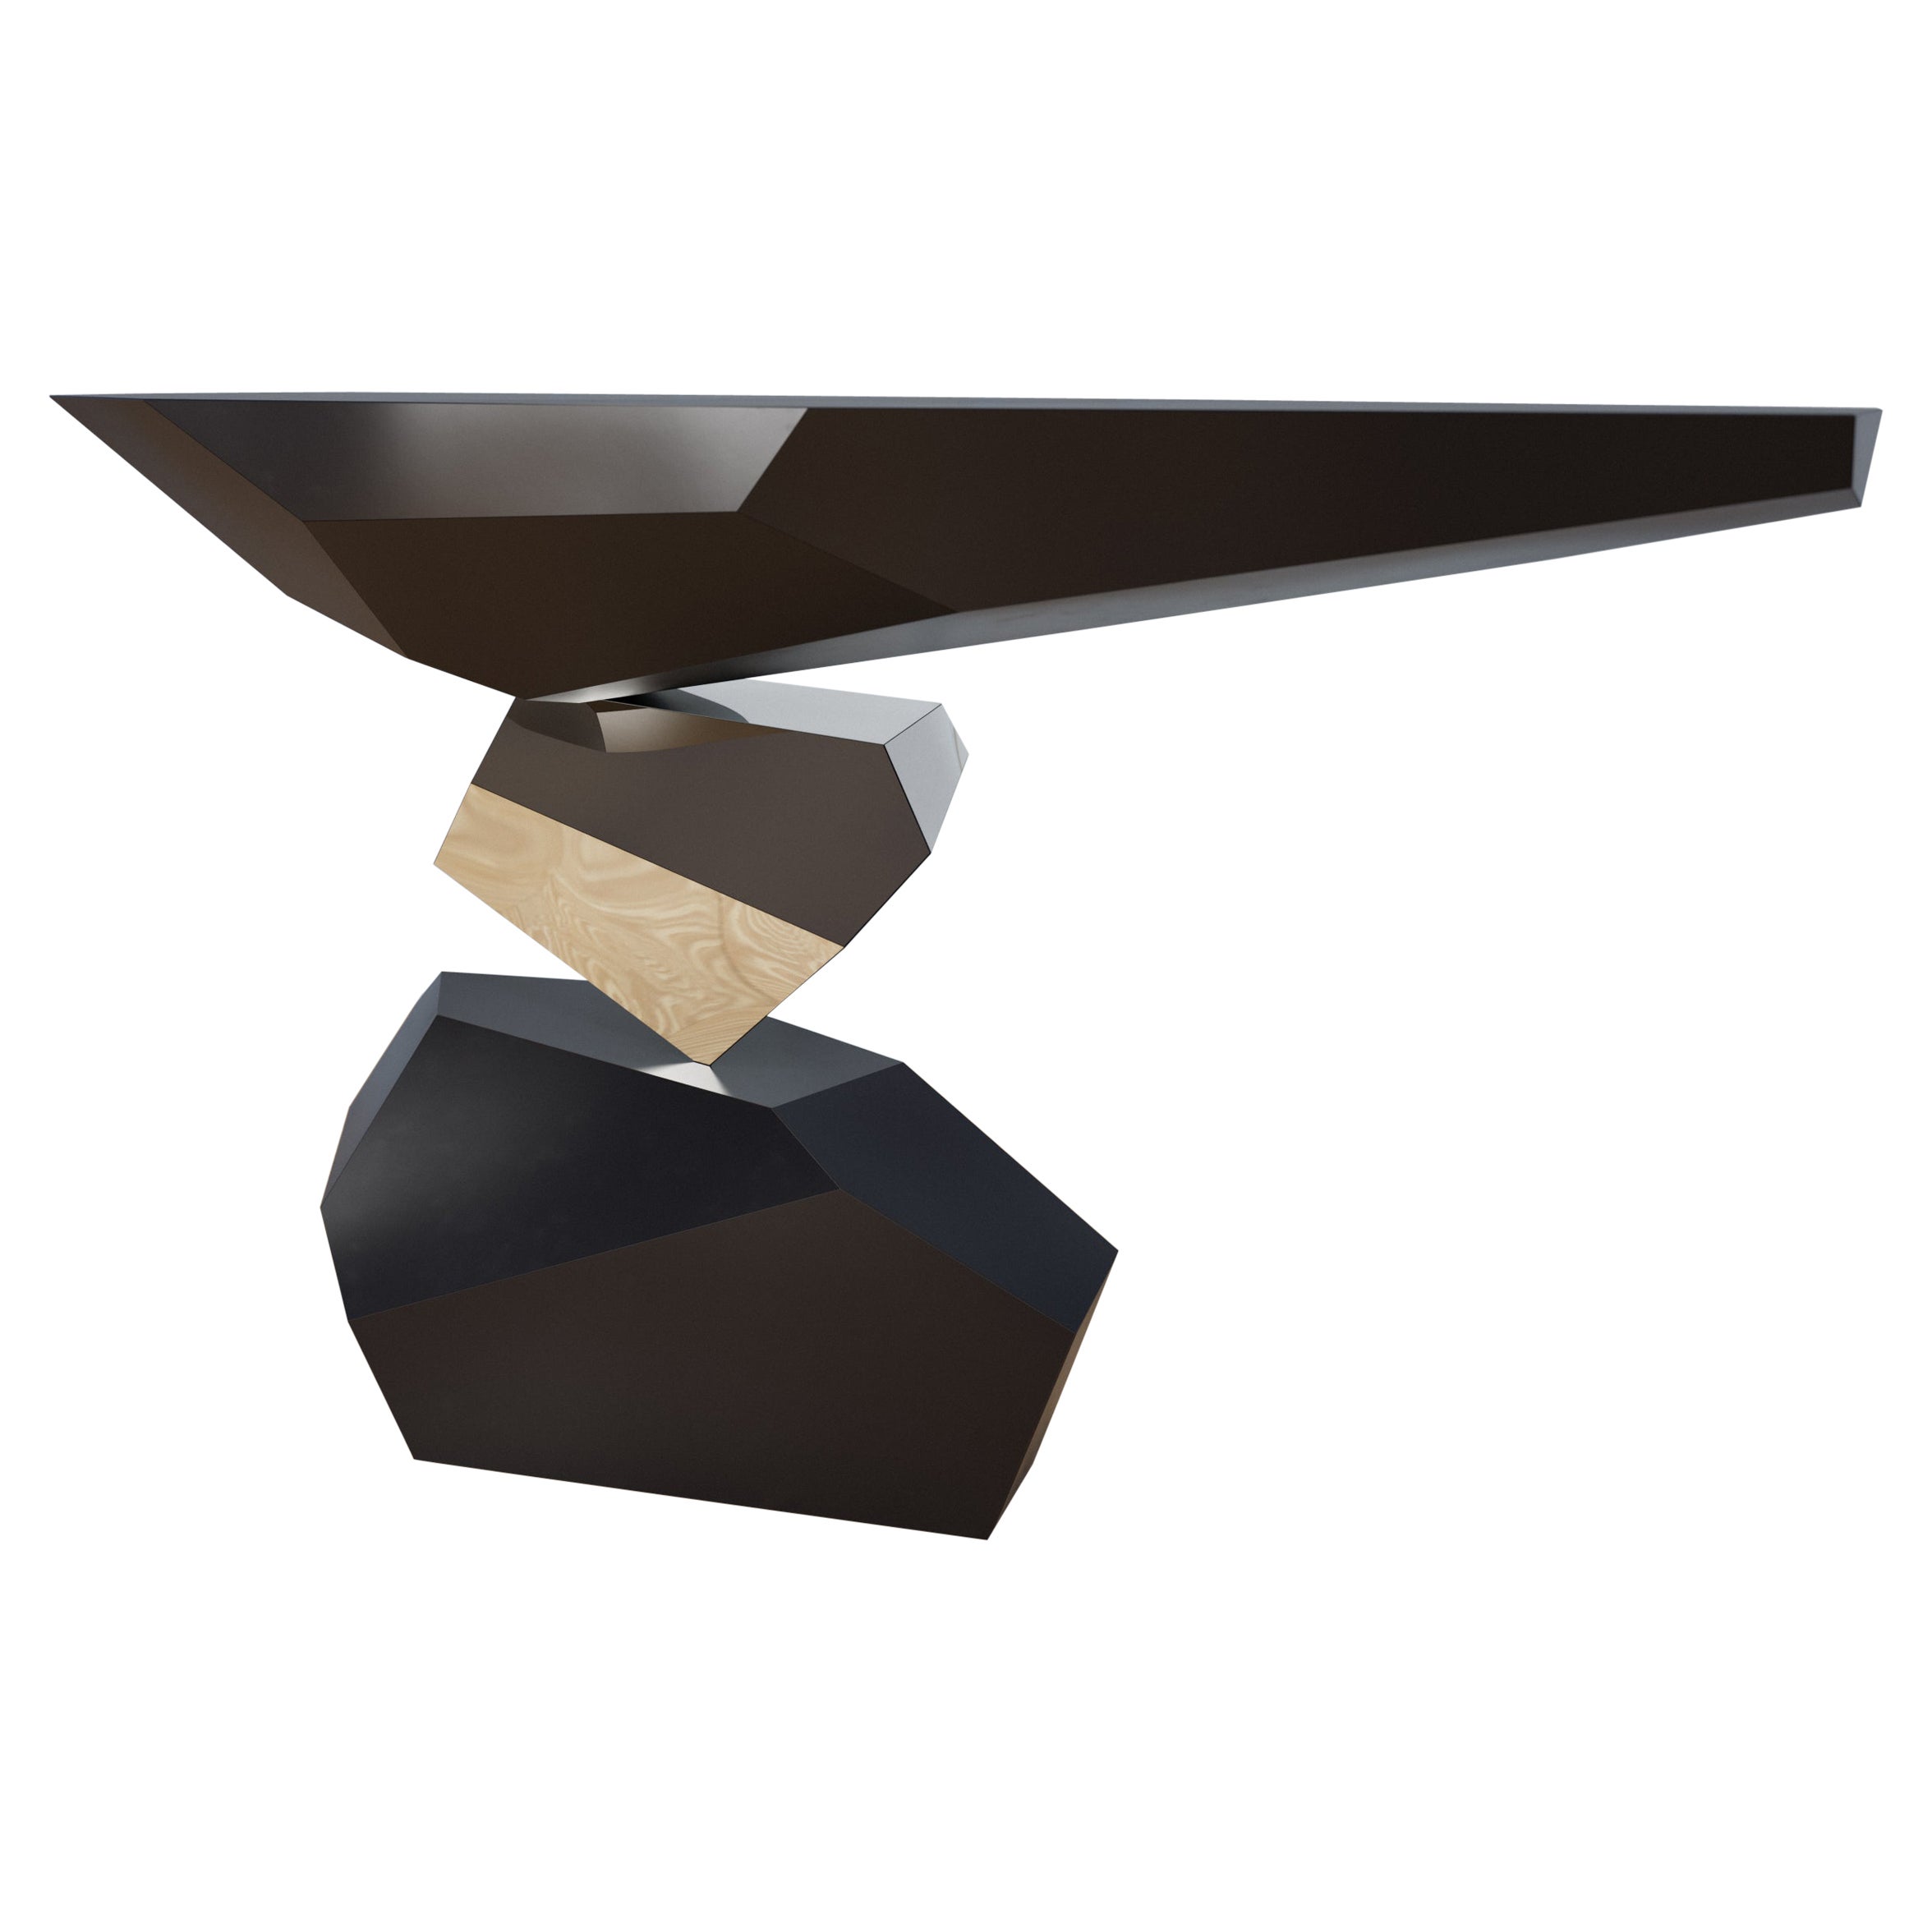 Serenity est une nouvelle table console monobloc de Christopher Duffy pour Duffy London qui semble défier la gravité, jouant avec la perspective visuelle dans un trompe-l'œil tridimensionnel ludique. Un ajout revigorant à tout couloir, hall d'entrée